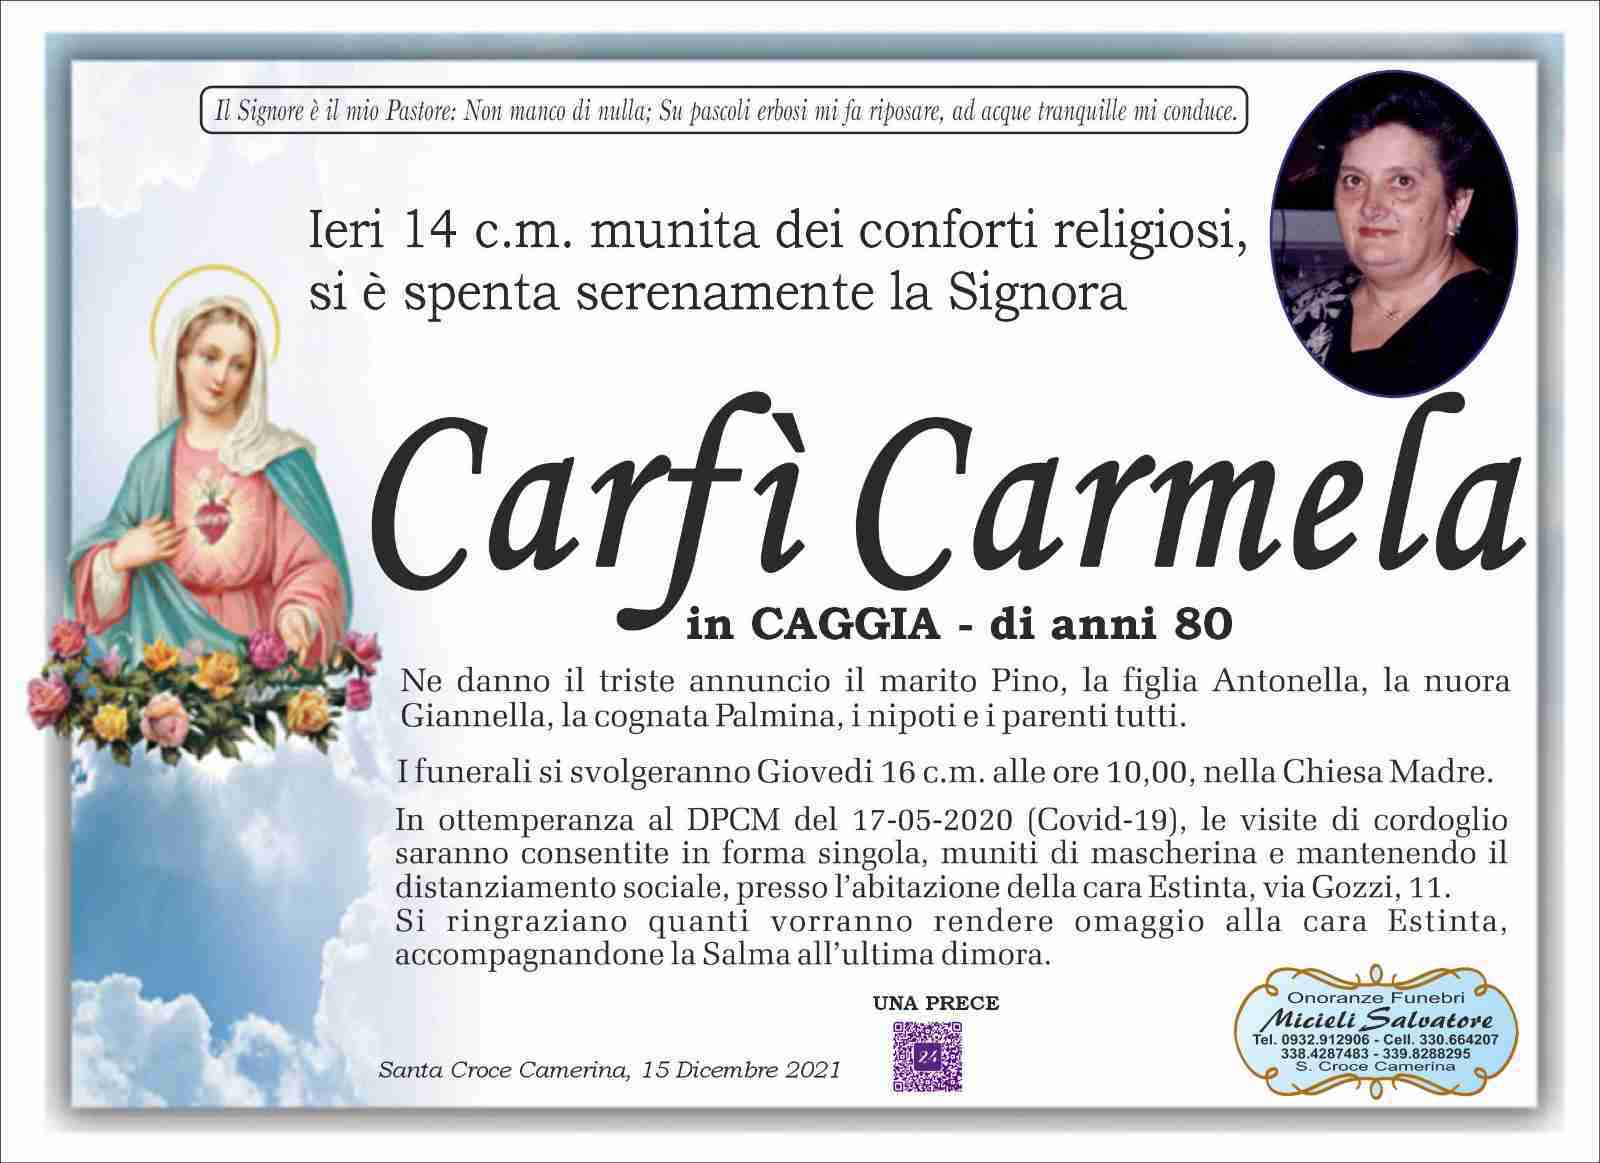 Carmela Carfí